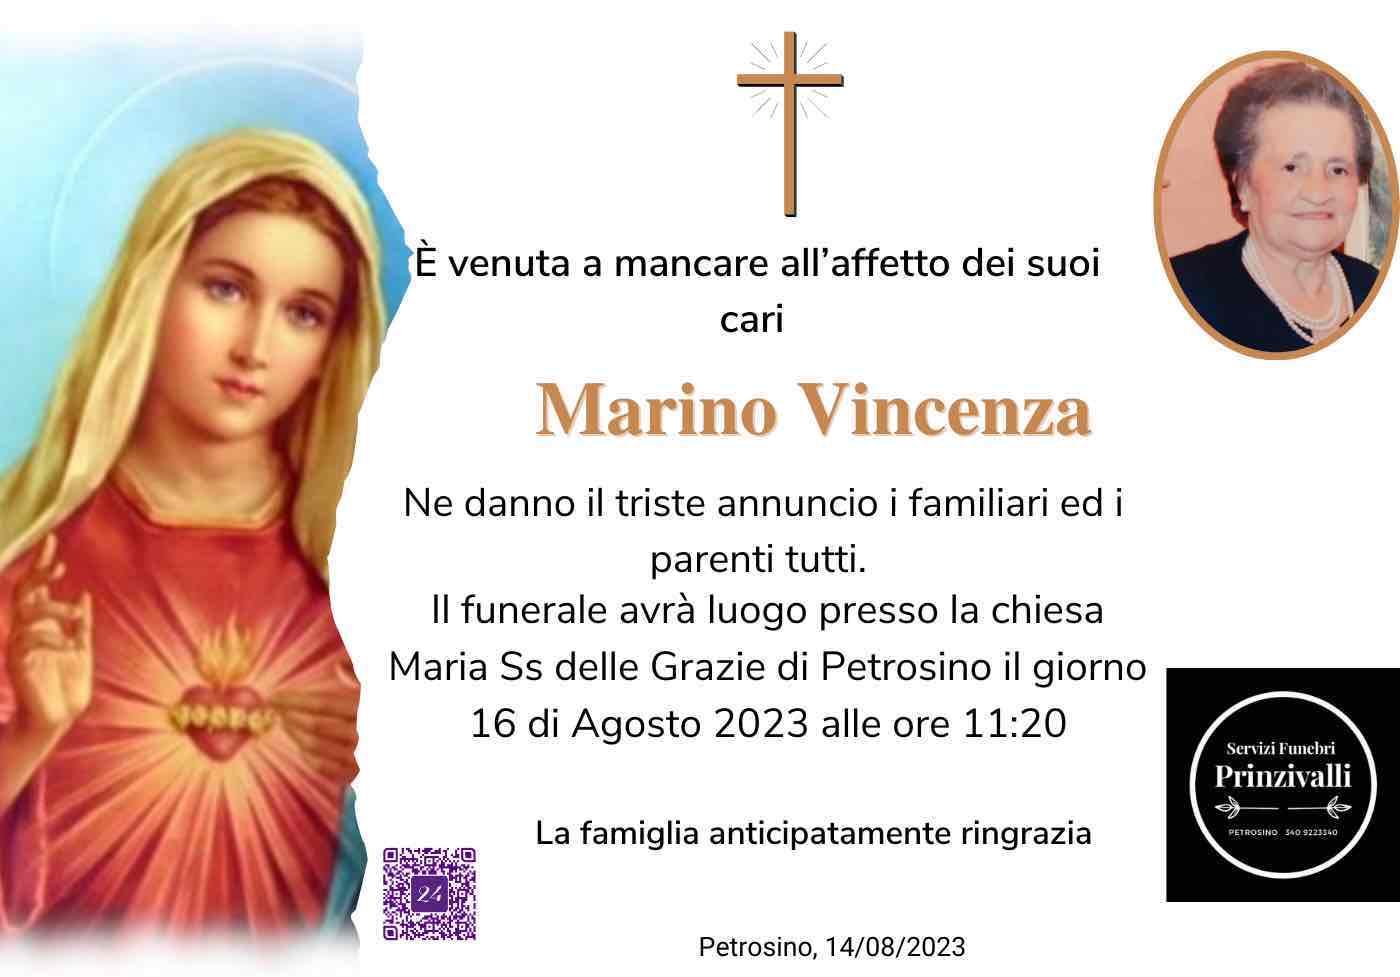 Vincenza Marino